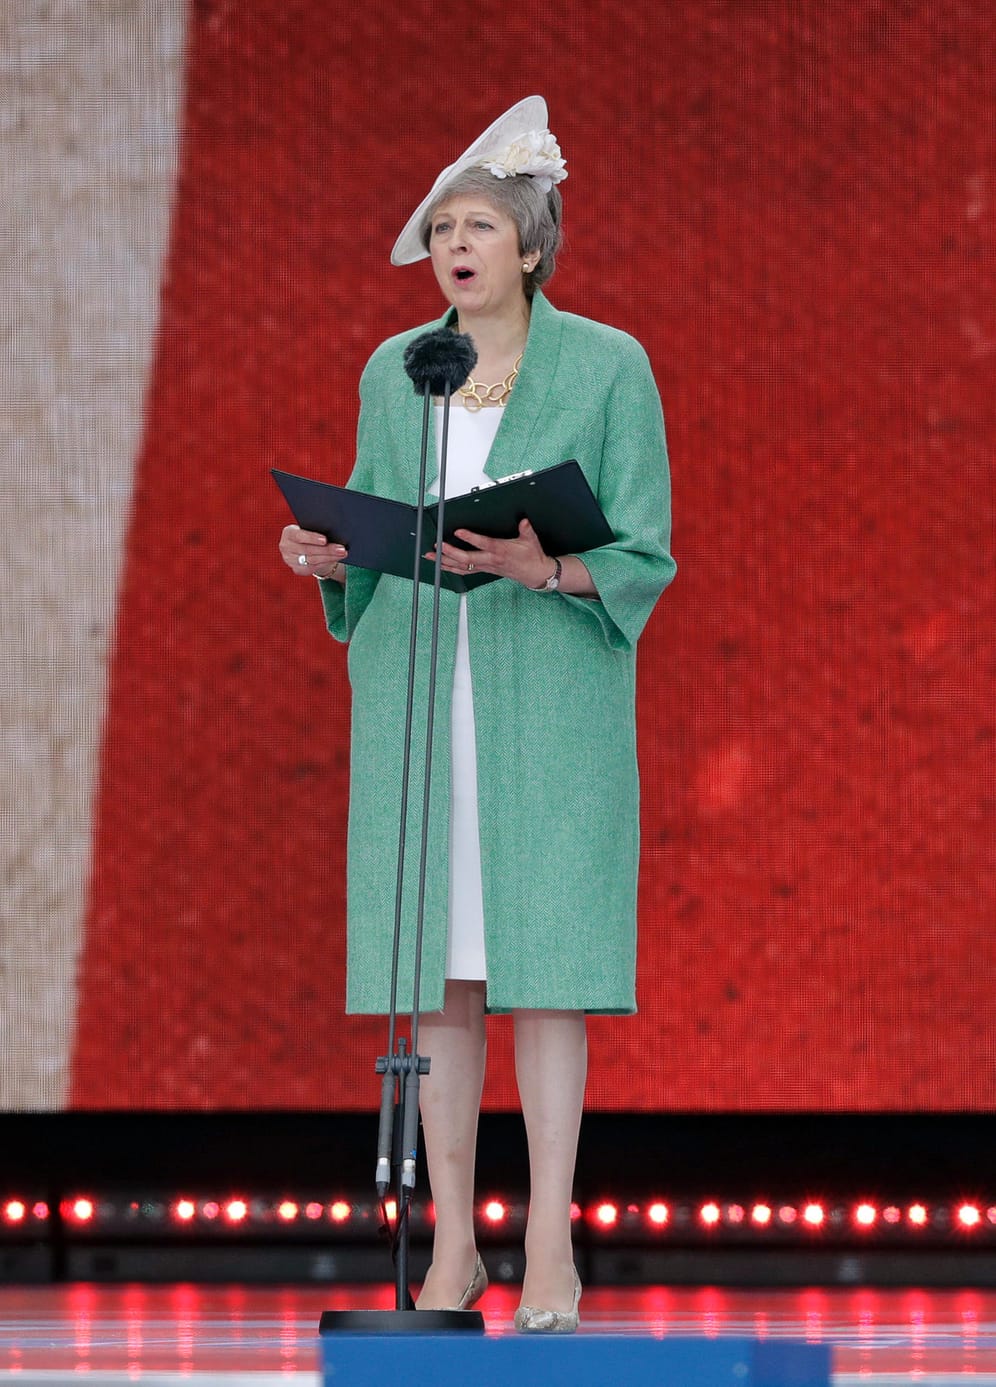 Die britische Premierministerin Theresa May – die am Freitag zurücktreten wird – während ihrer Rede bei der Feier.